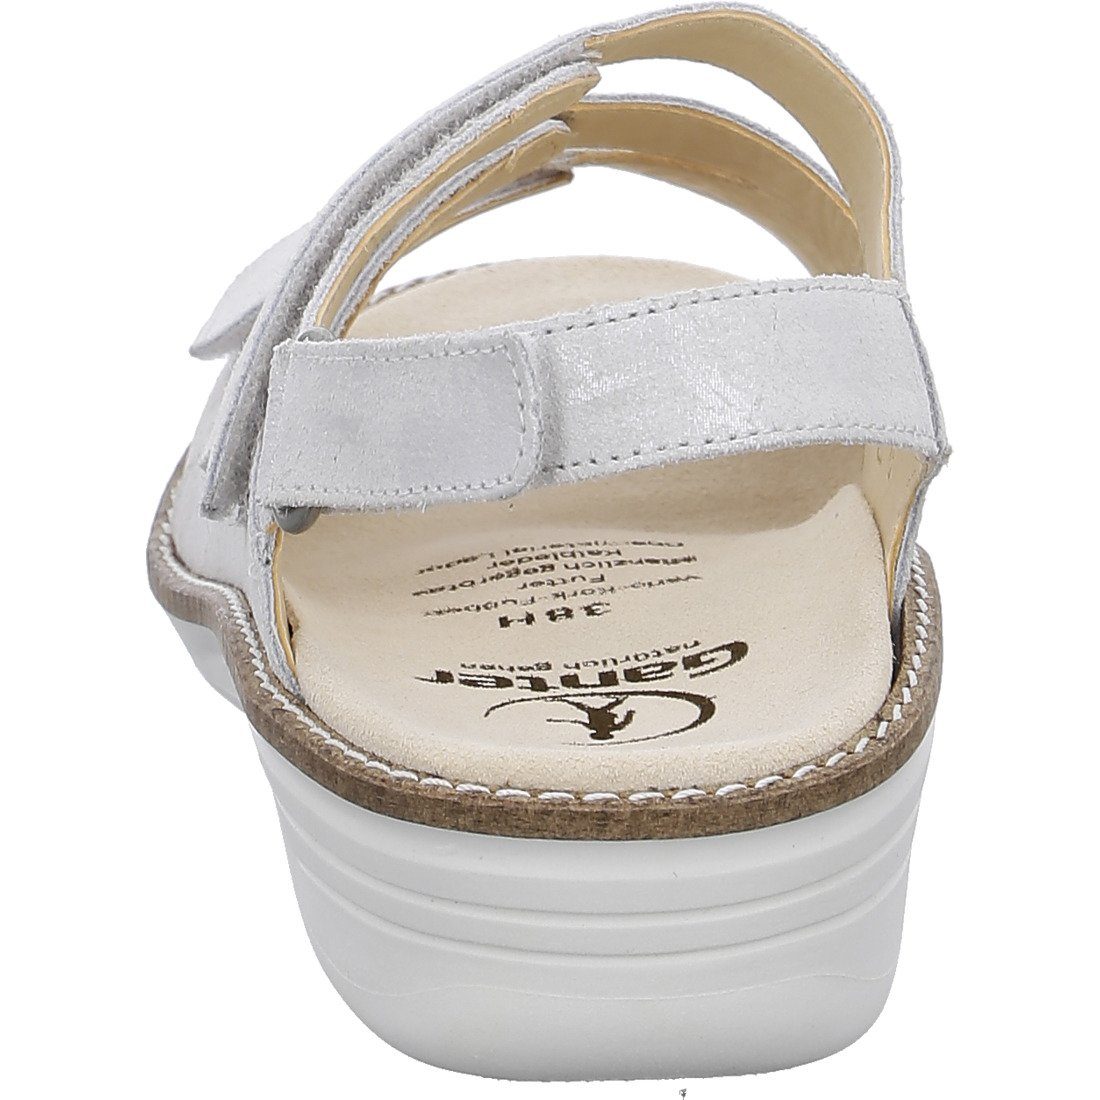 Damen Schuhe, offwhite Sandalette 048883 Ganter Ganter Velours Sandalette Hera -